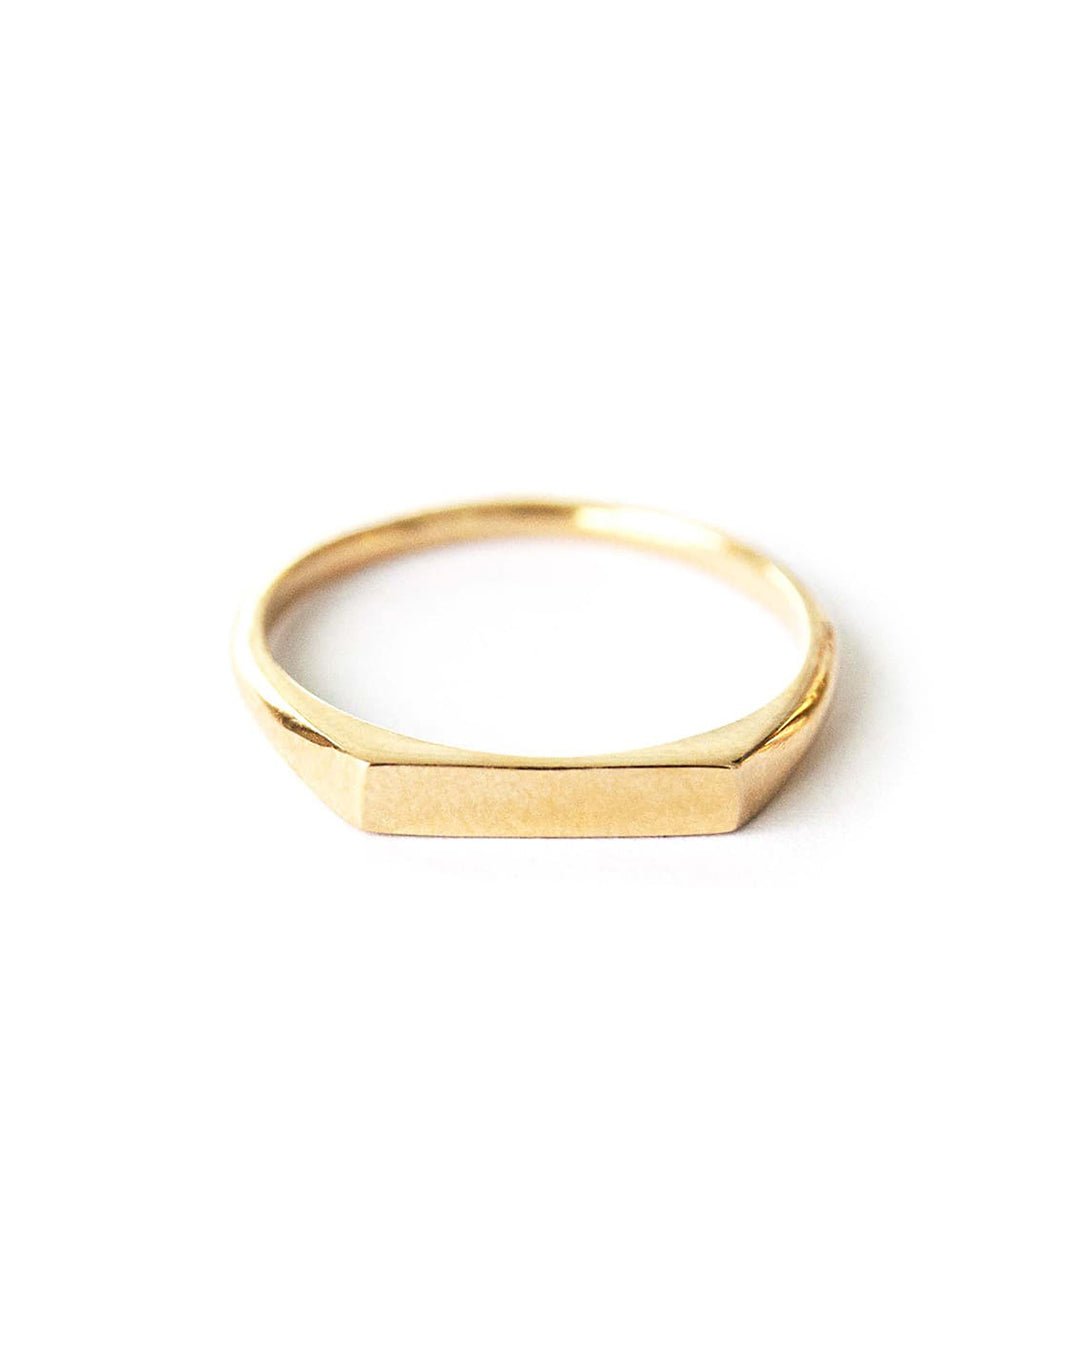 Fuso Gold Ring